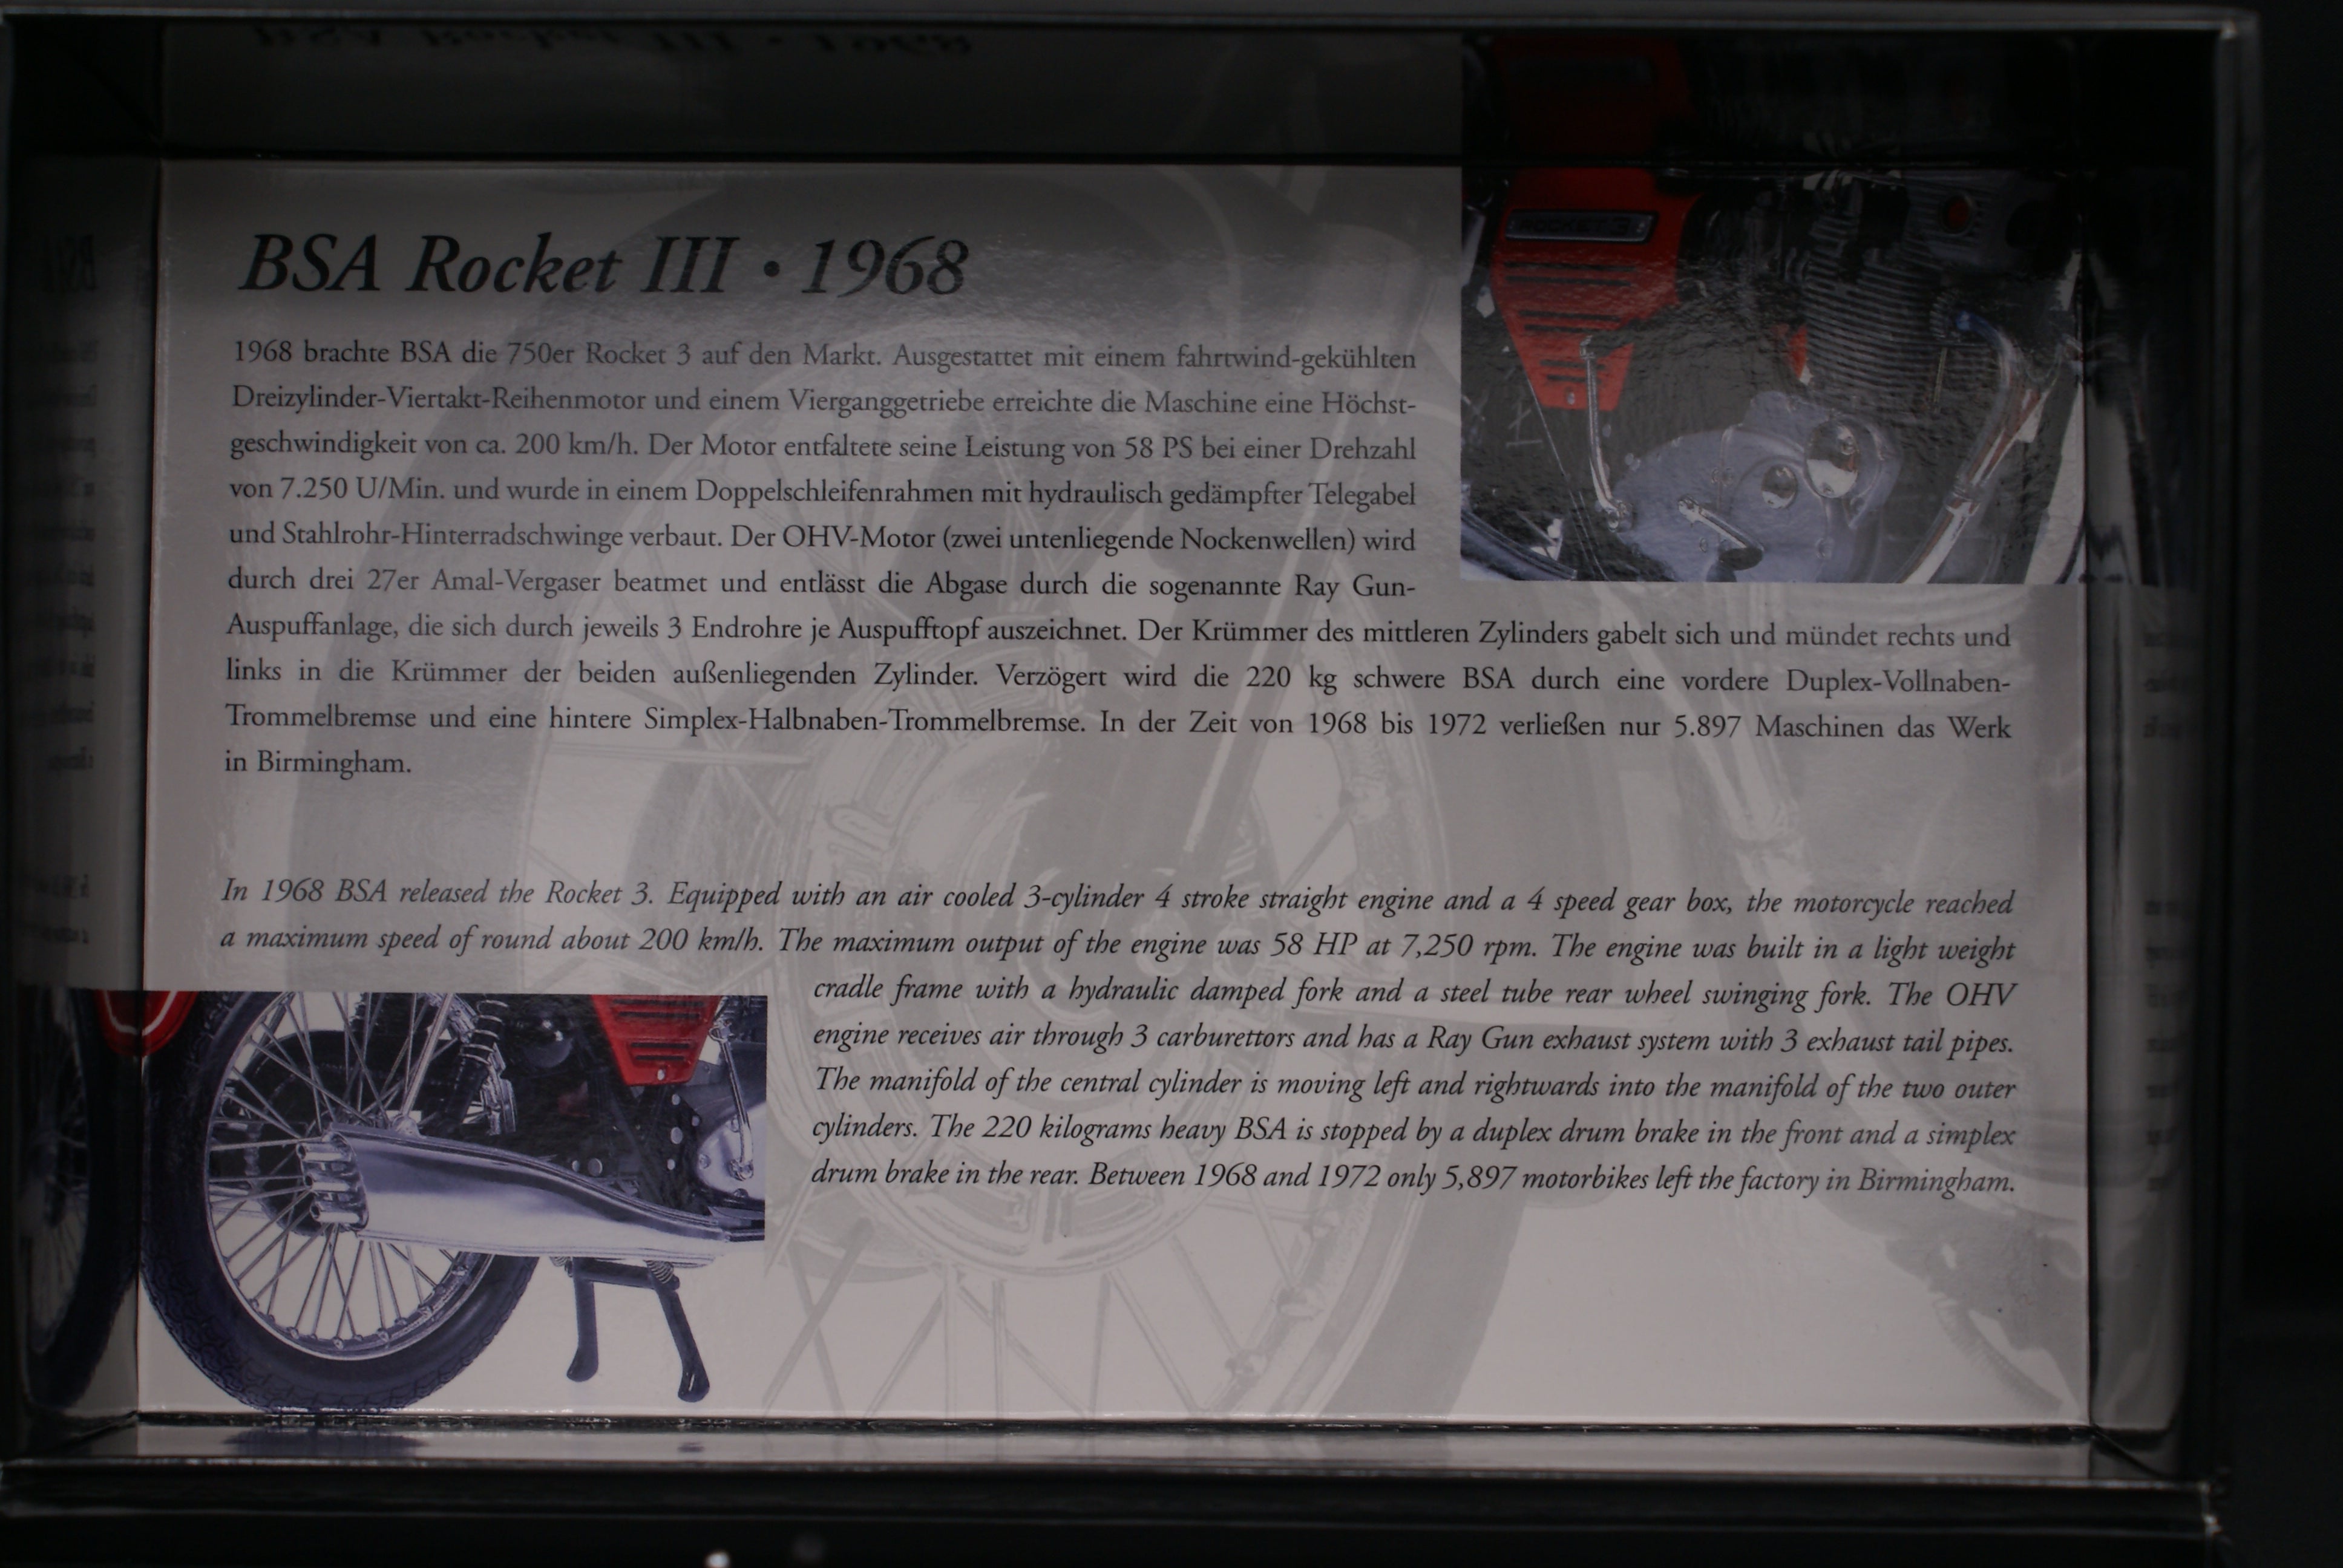 BSA Rocket III